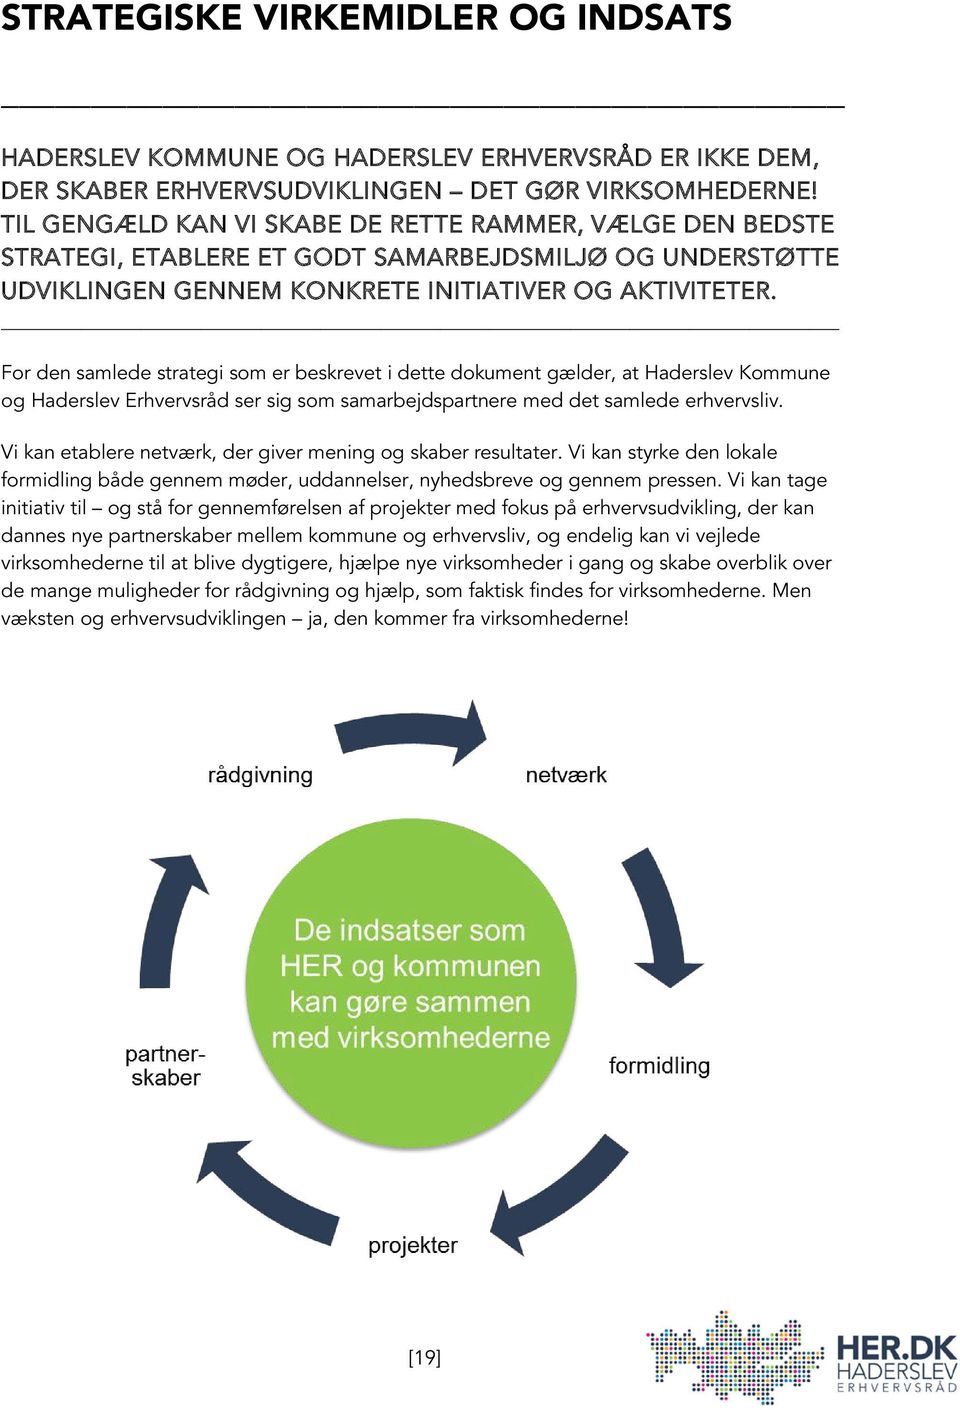 For den samlede strategi som er beskrevet i dette dokument gælder, at Haderslev Kommune og Haderslev Erhvervsråd ser sig som samarbejdspartnere med det samlede erhvervsliv.